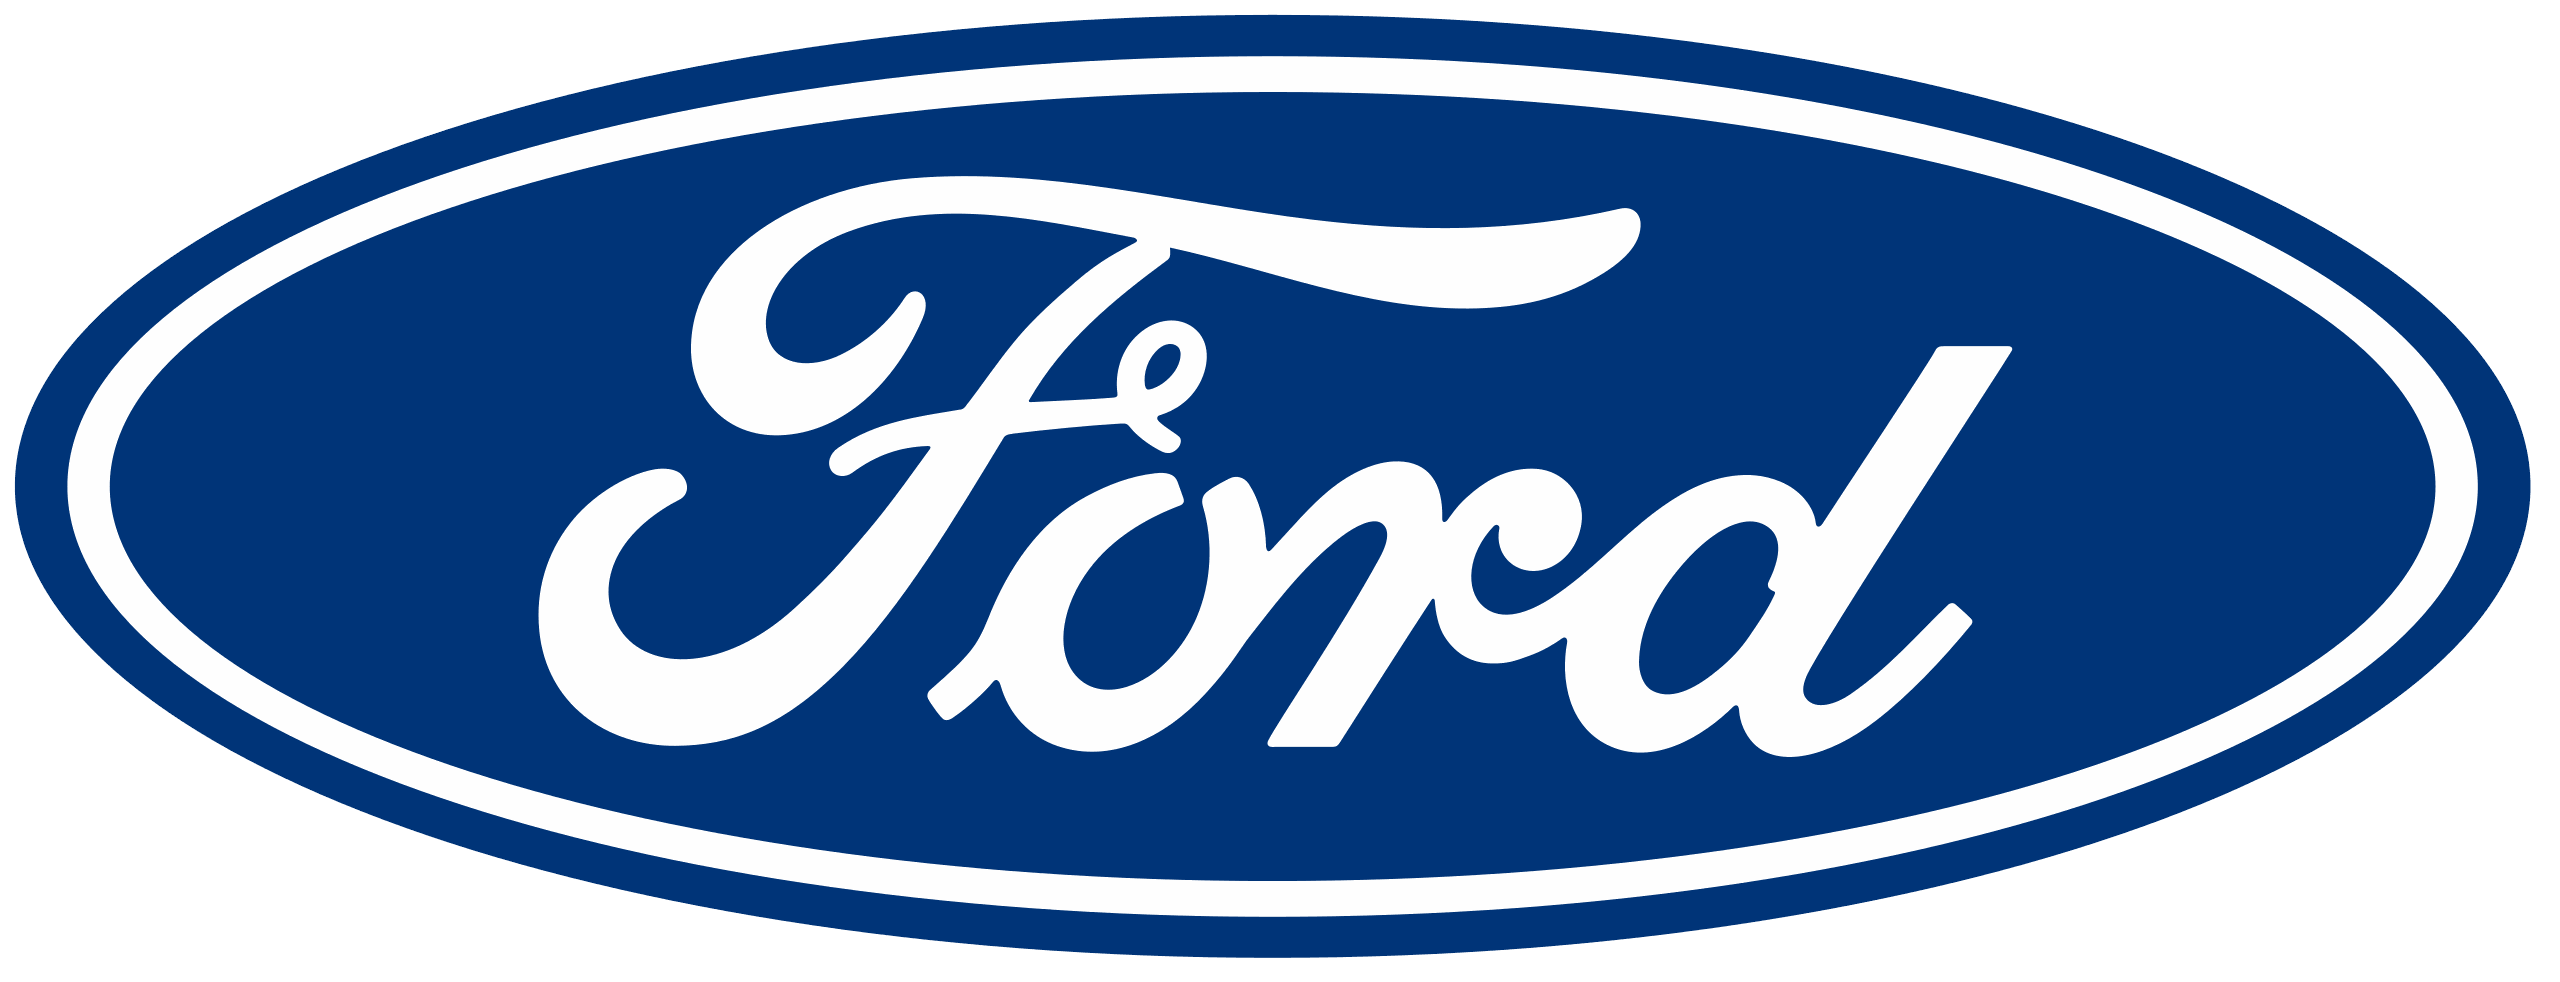 Ford E-transit